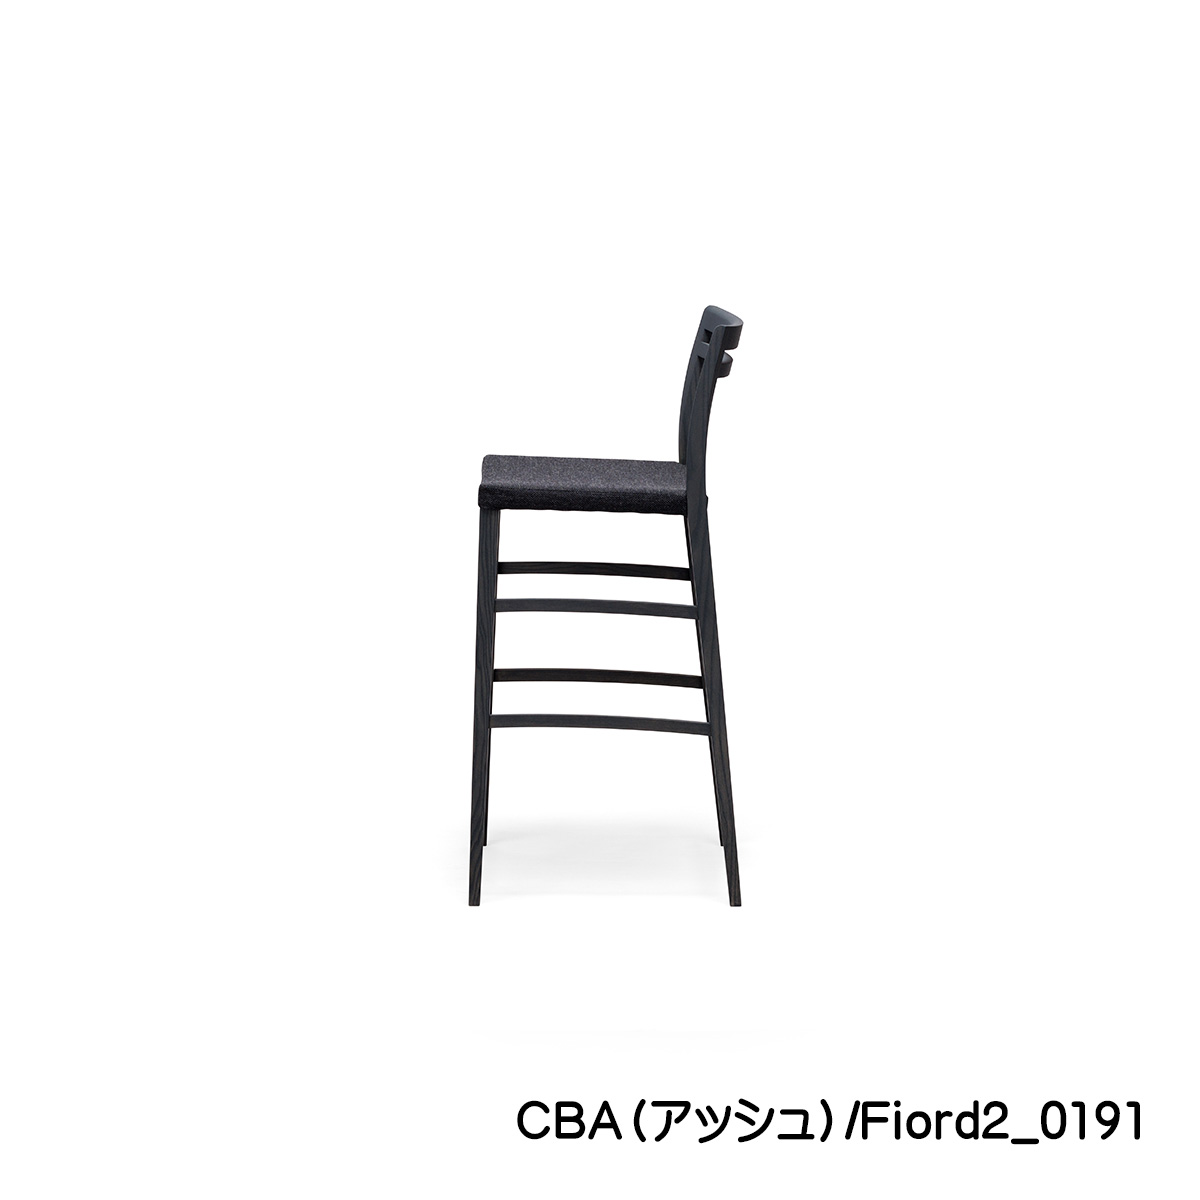 バーチェア65㎝or75㎝「FIKA（フィーカ）」カーボンアッシュ（CBA）は、モノトーン調にもよく合うデザインとお色です。